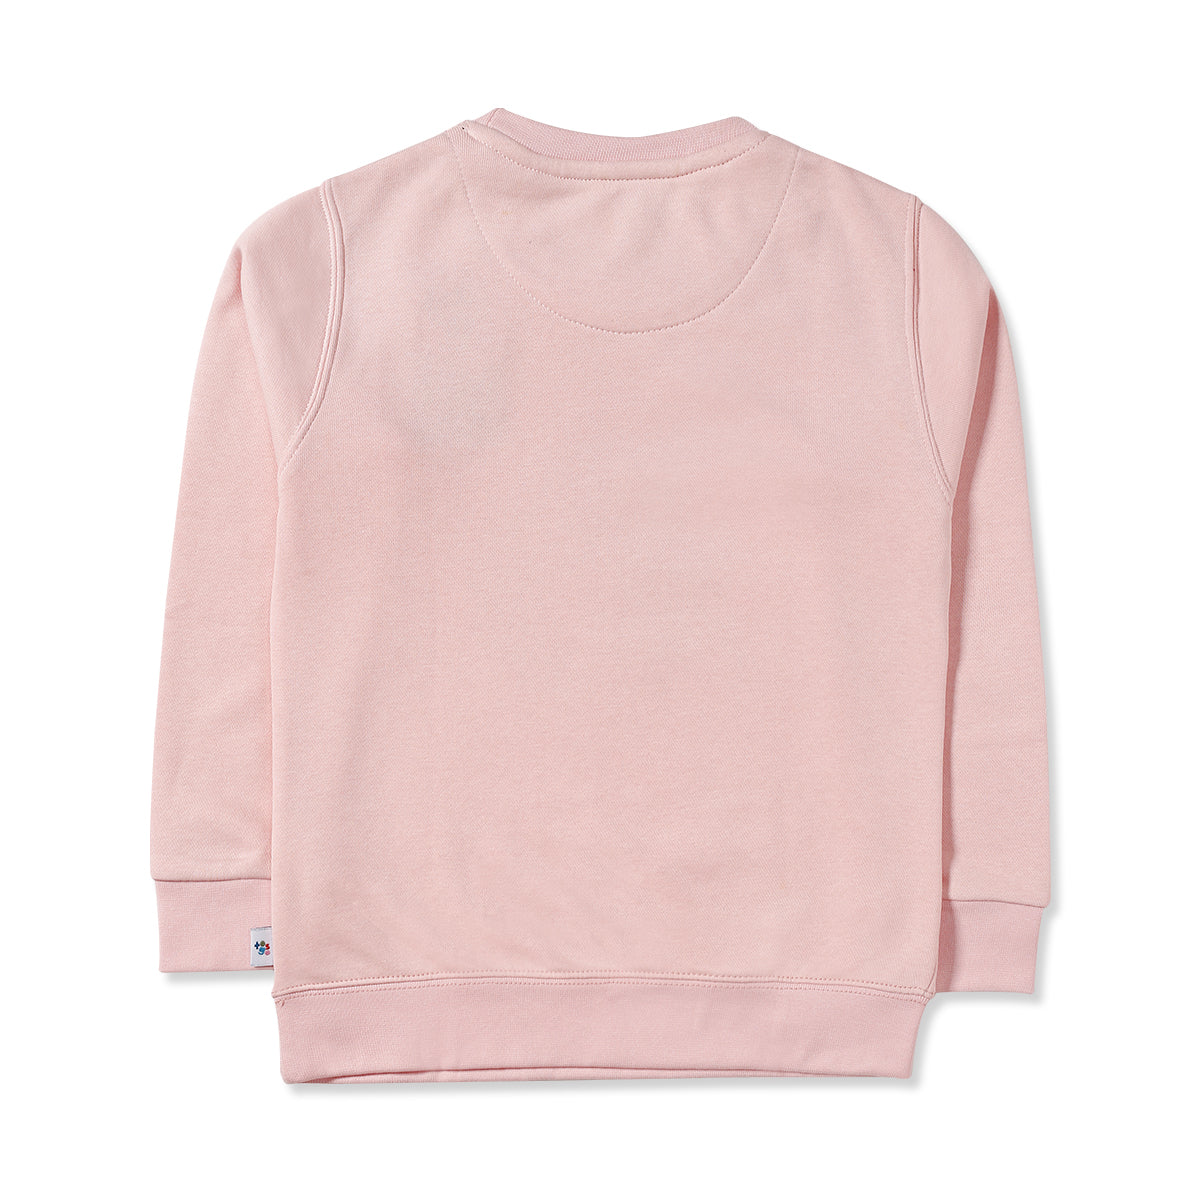 Always with You Pink Sweatshirt